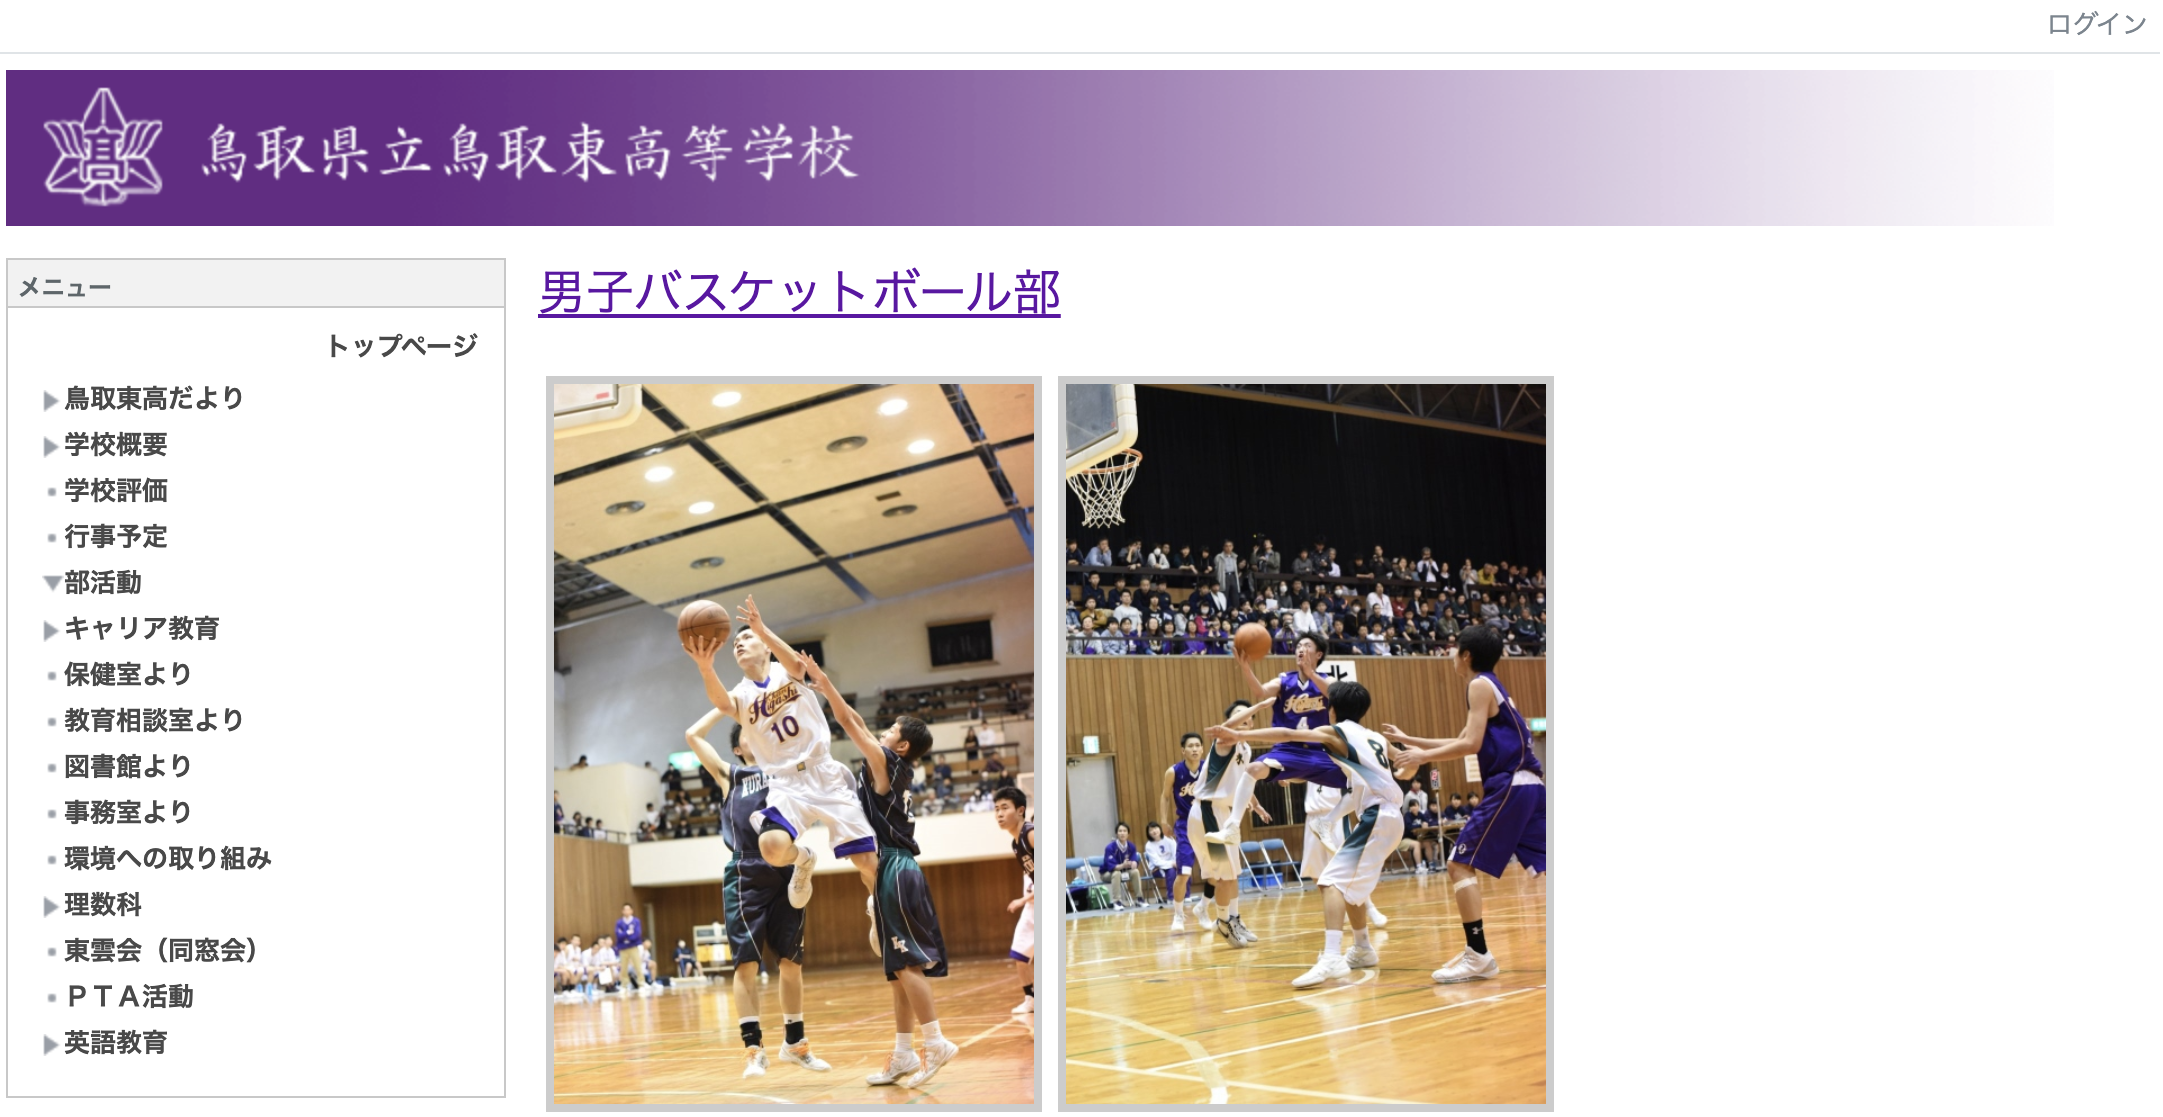 年版 鳥取県の高校バスケ強豪校を過去大会の情報から徹底解説 バスケ初心者用メディア ブザビ